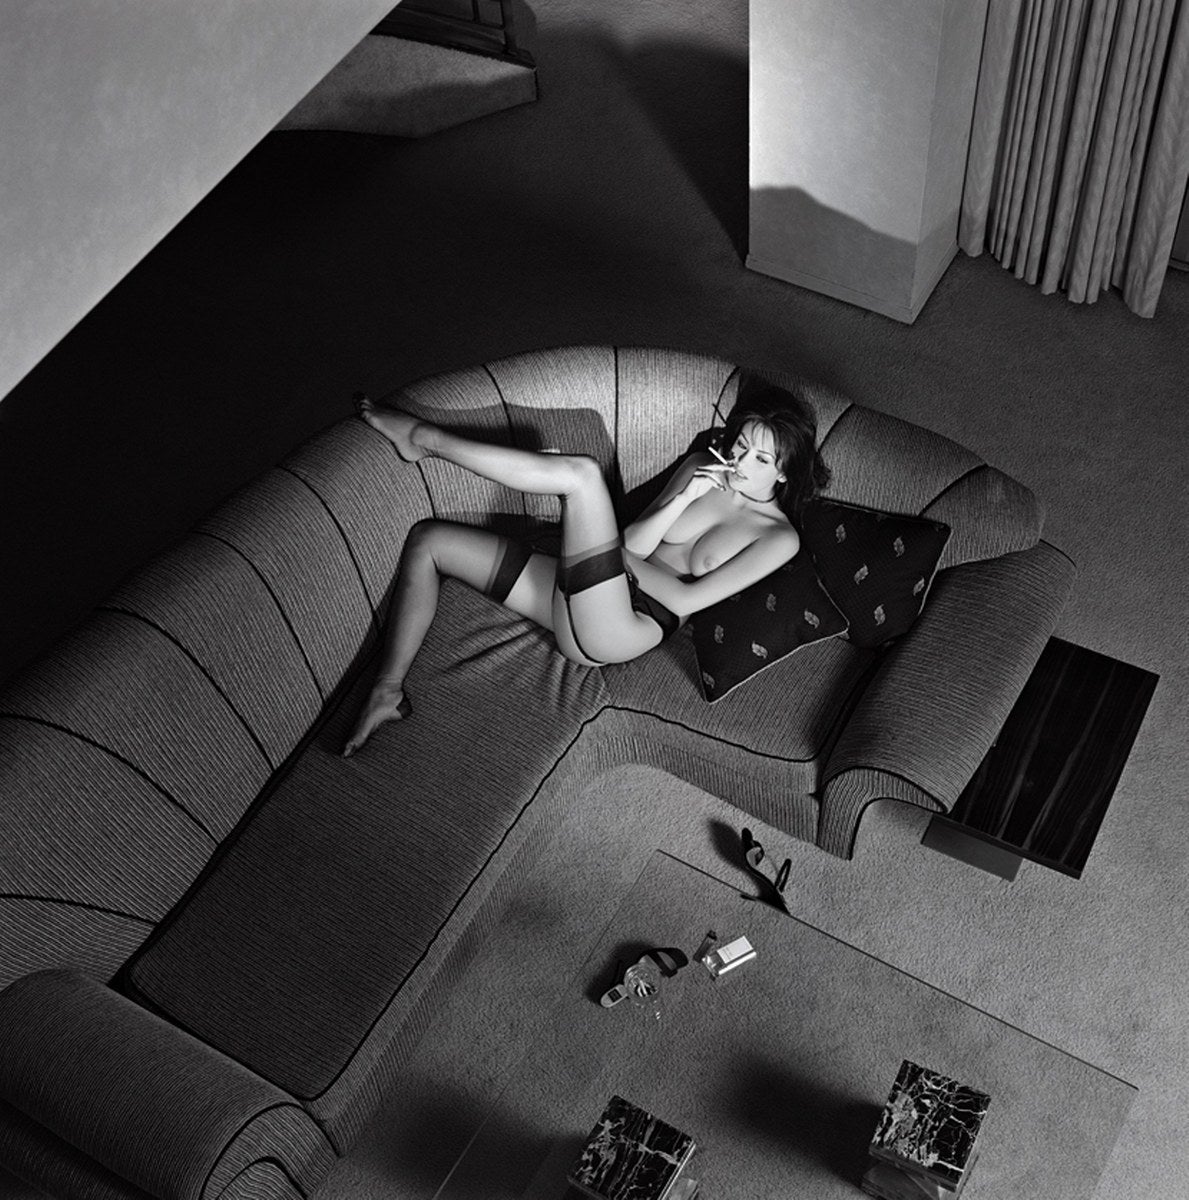 Petra fumant une cigarette - femme nue sur un canapé, photographie d'art, 2012